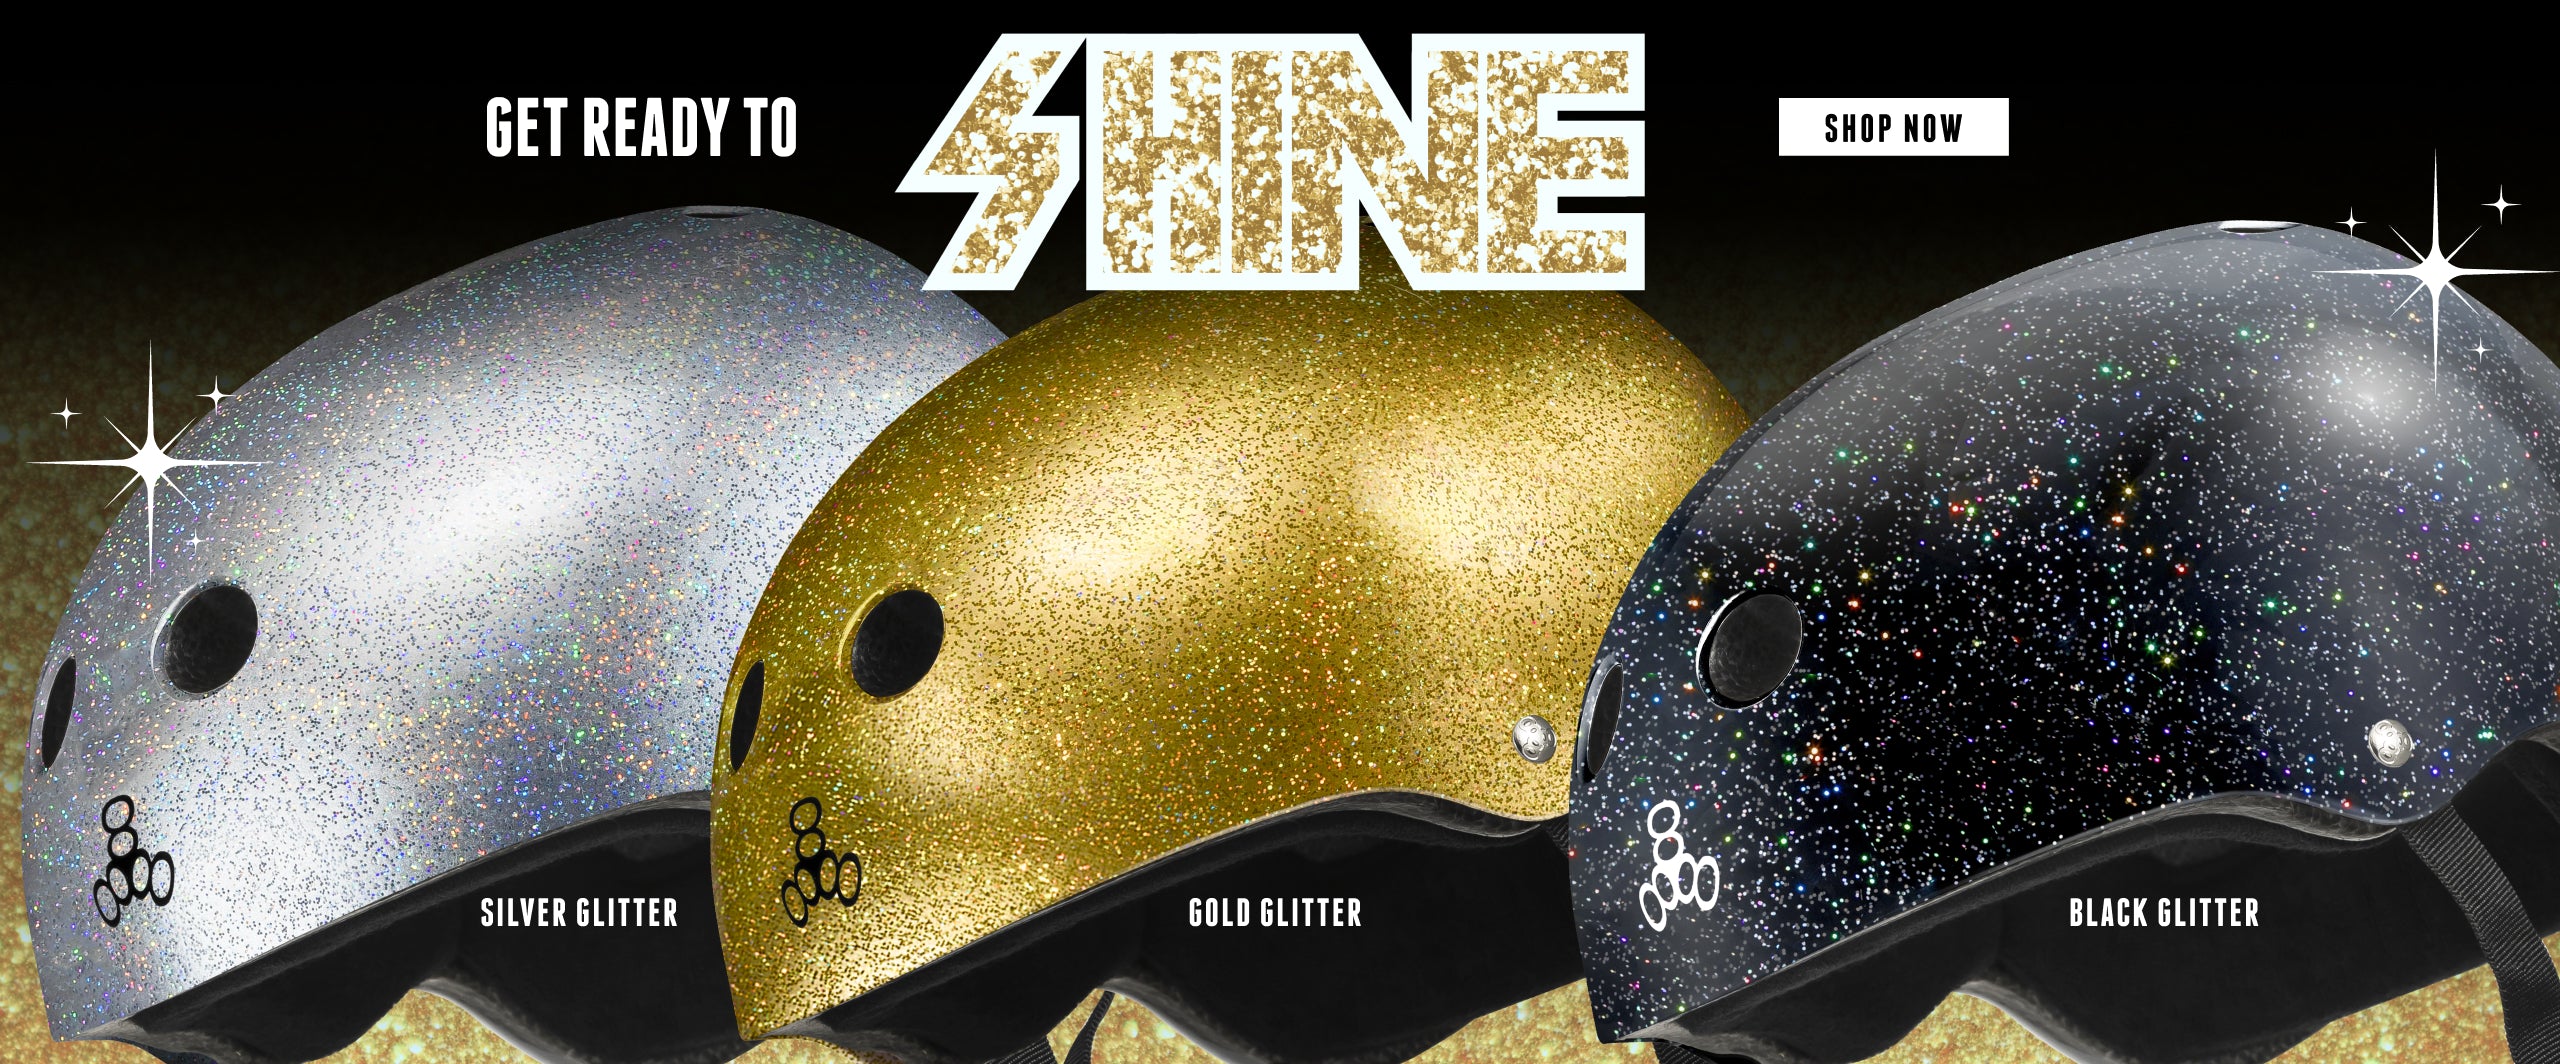 Shop for Glitter Helmets